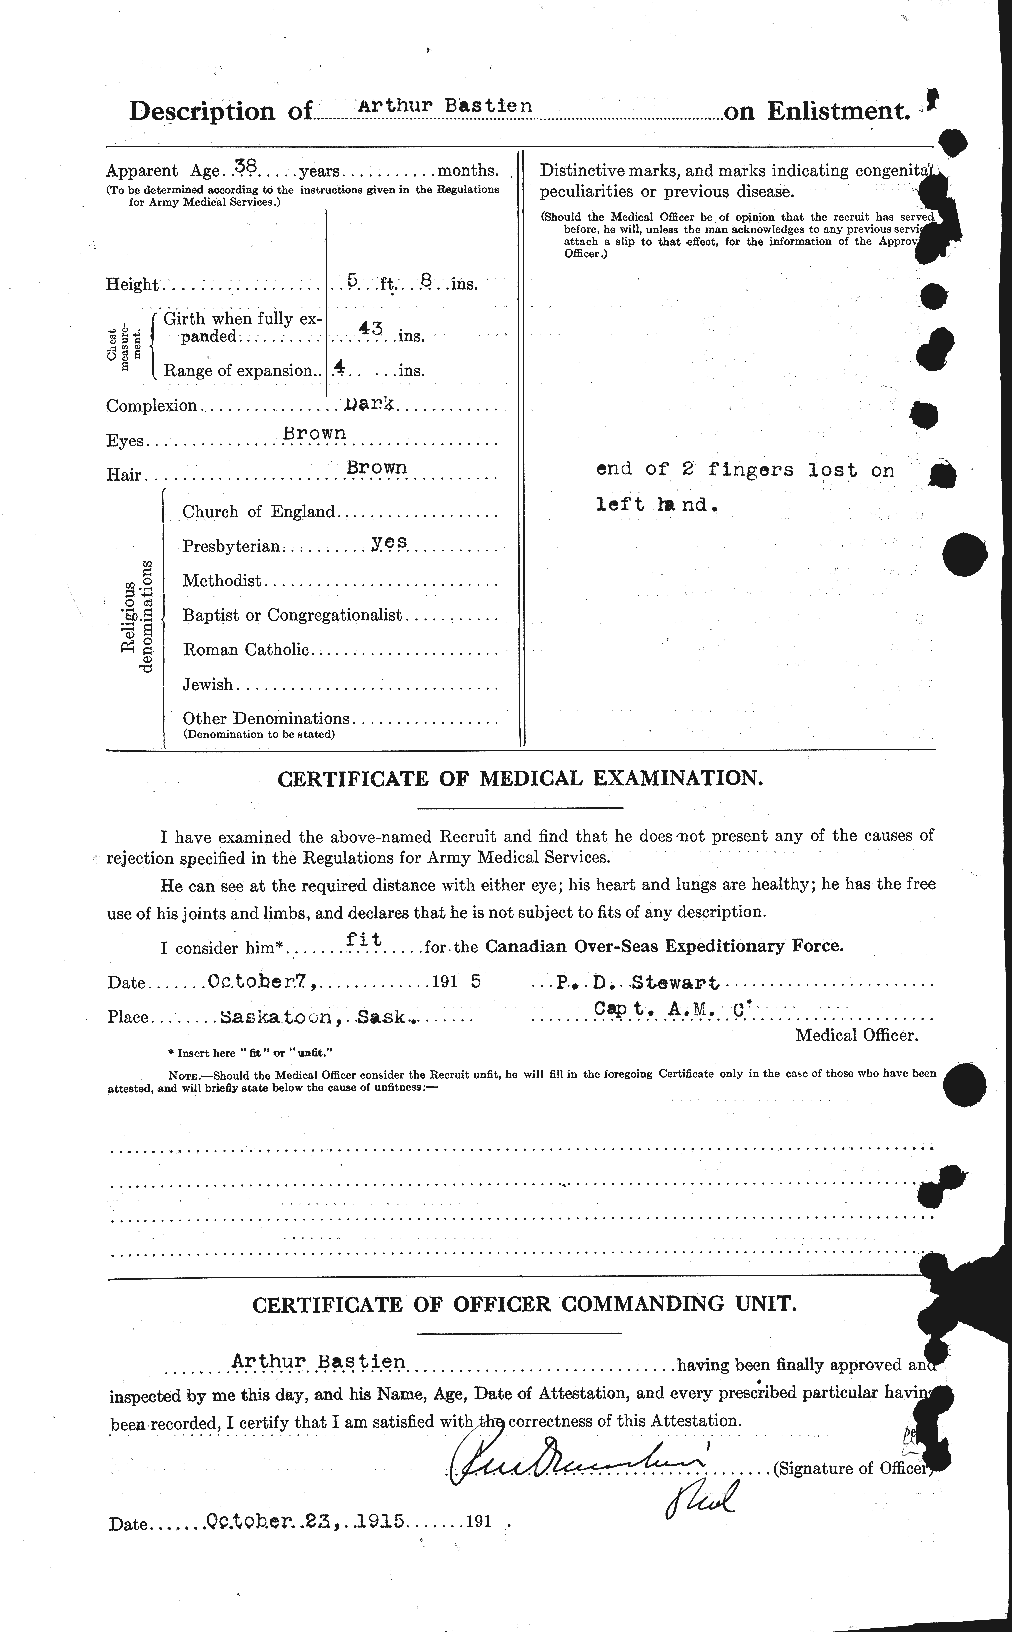 Dossiers du Personnel de la Première Guerre mondiale - CEC 228246b